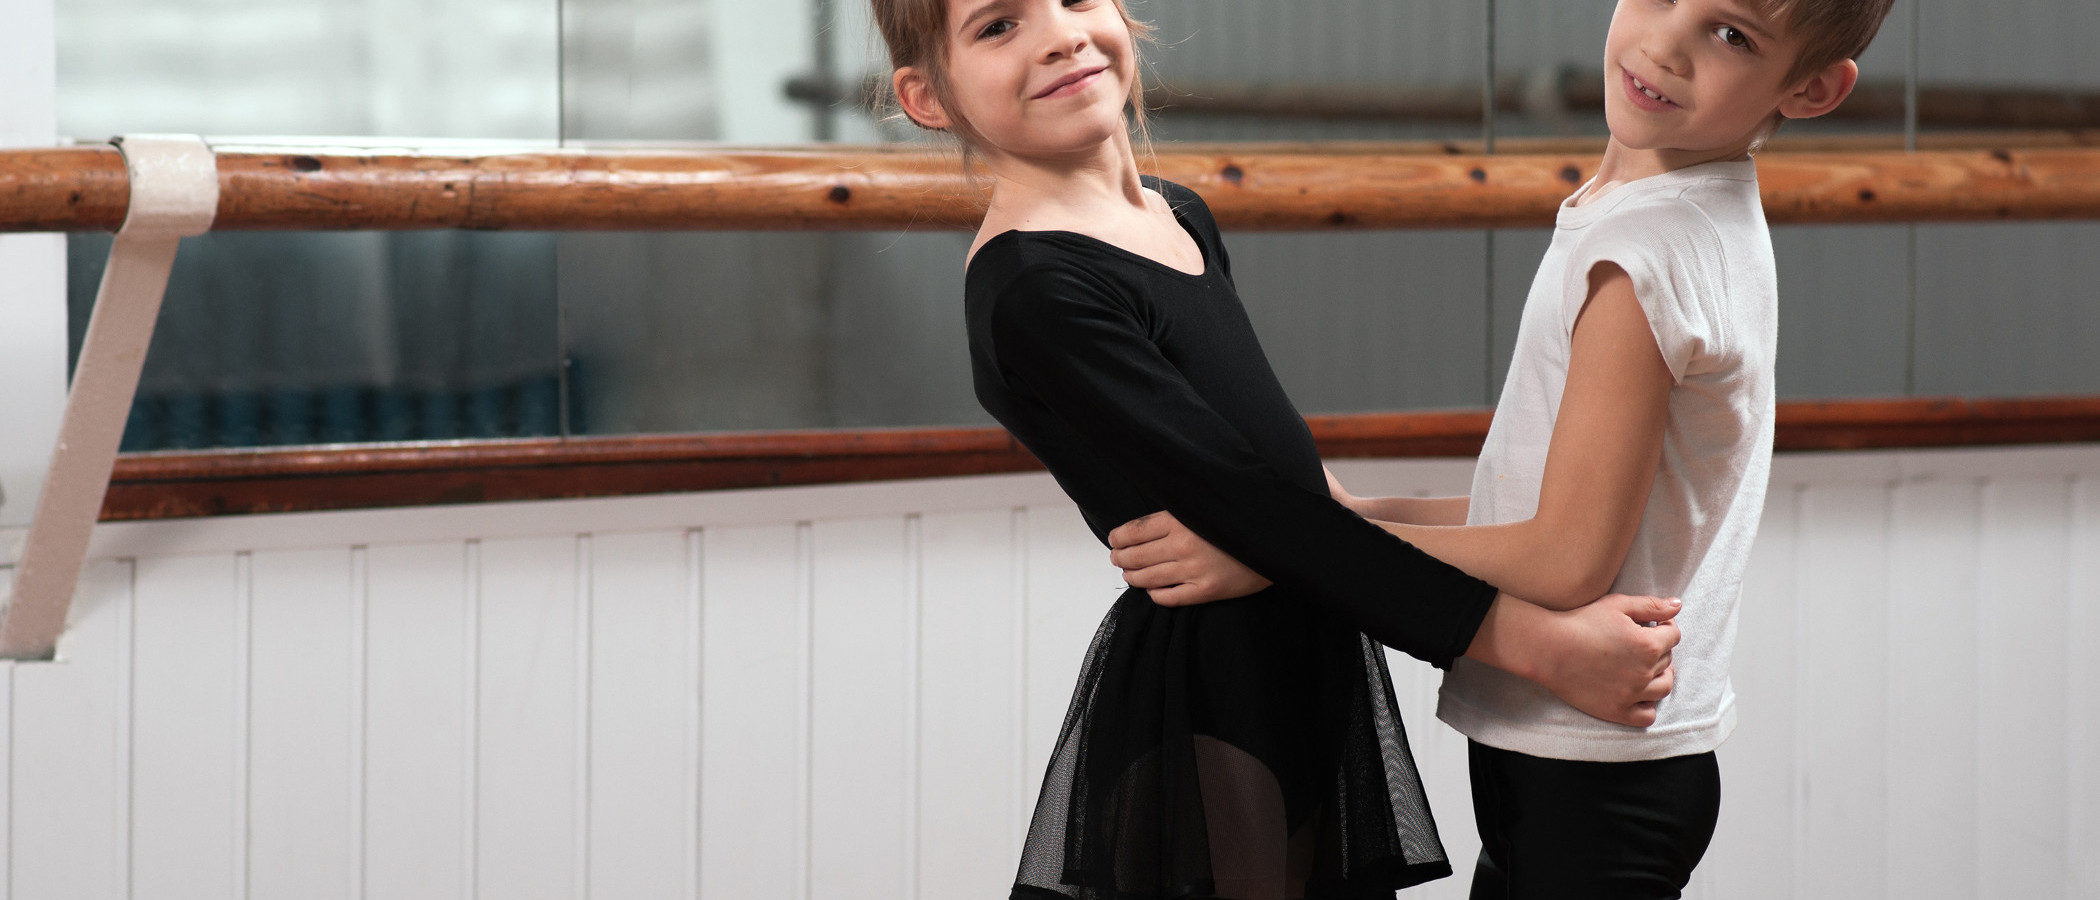 Actividades extraescolares: Beneficios del ballet en los niños